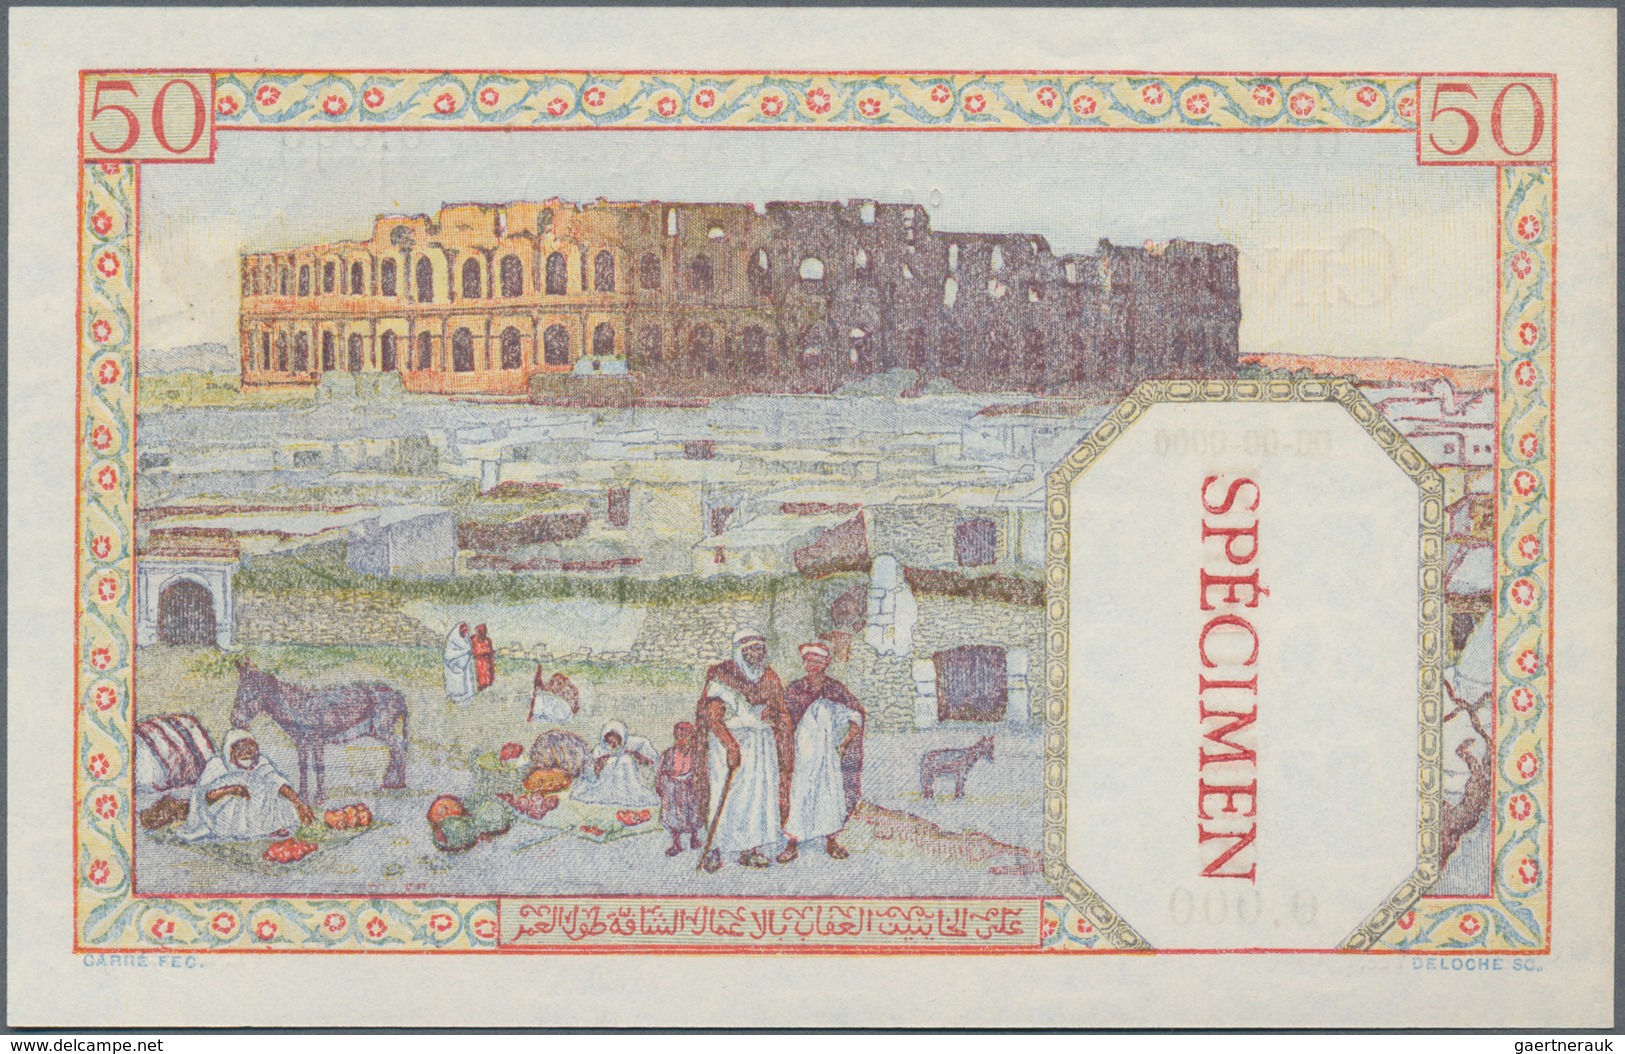 Tunisia / Tunisien:  Banque De L'Algérie – TUNISIE 50 Francs 1938-45 SPECIMEN, P.12s In Perfect UNC - Tunesien